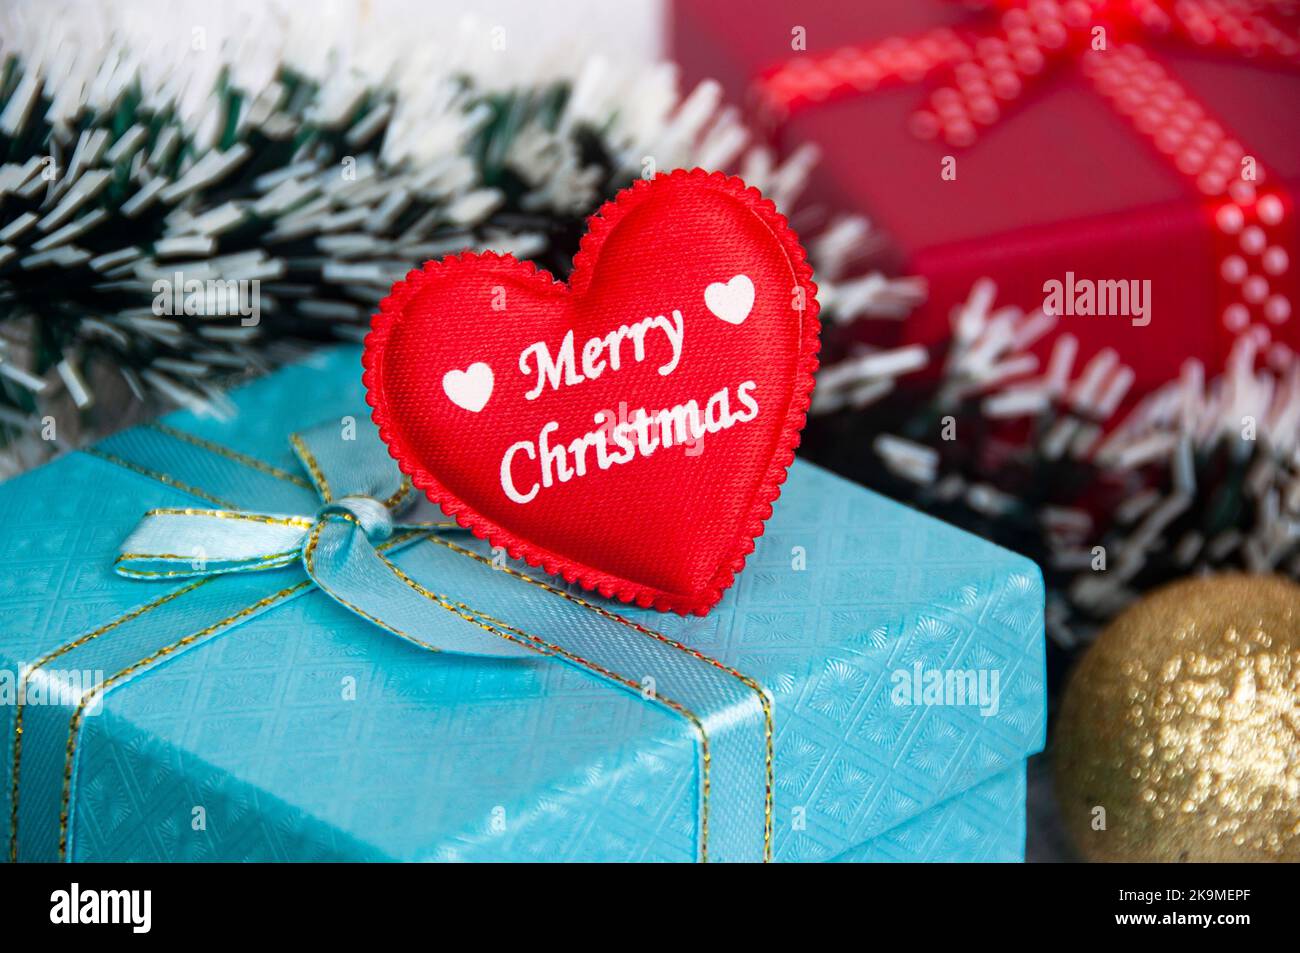 Frohe Weihnachten Wünsche auf rote Herzform auf Weihnachtsgeschenk. Weihnachtszeit-Konzept. Stockfoto